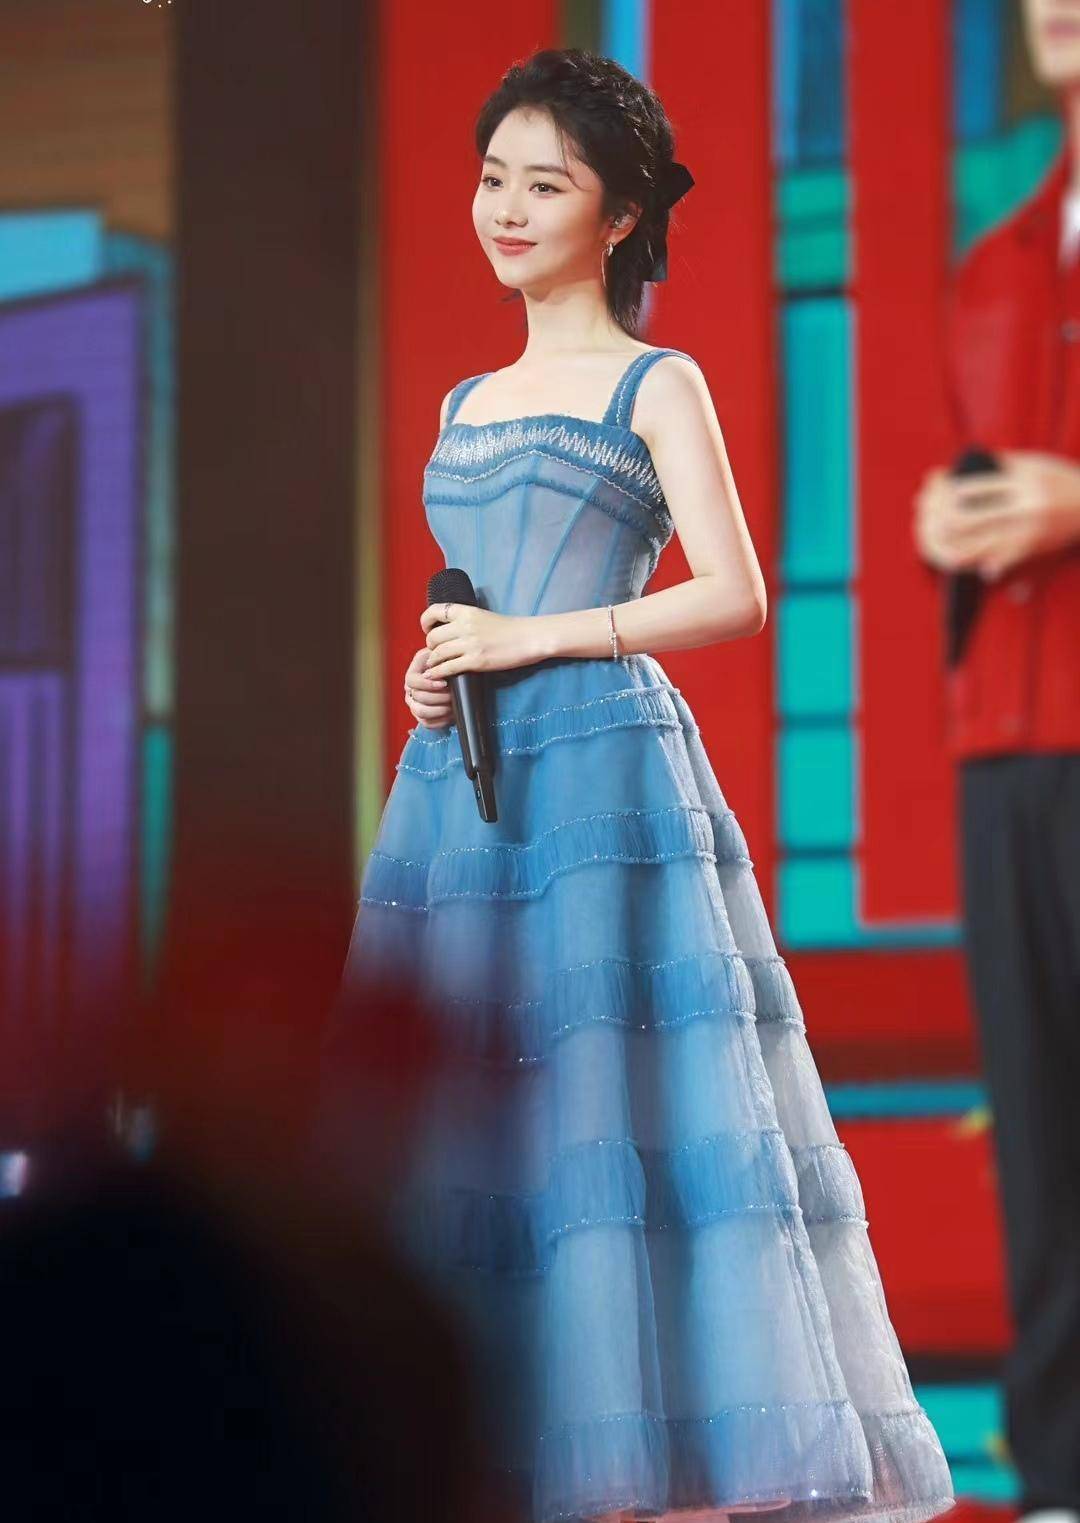 谭松韵北京卫视舞台造型出炉,身穿蓝色吊带裙,清新甜美!